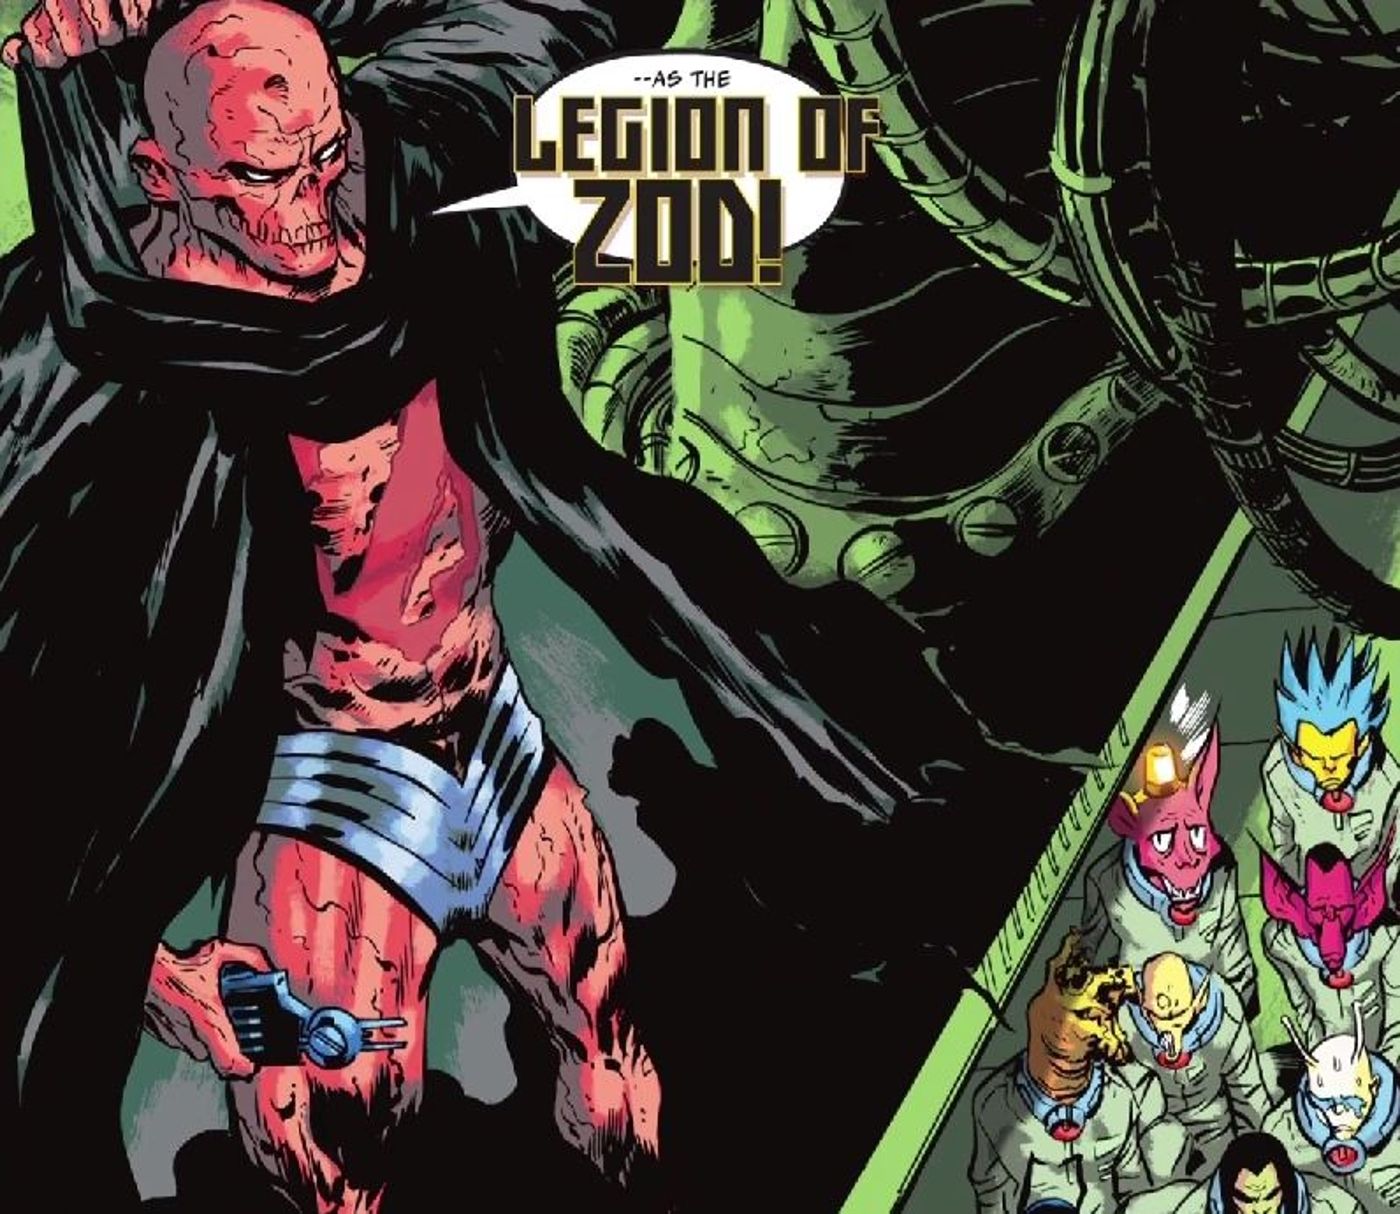 Novo Zod lidera Legião de Zod DC